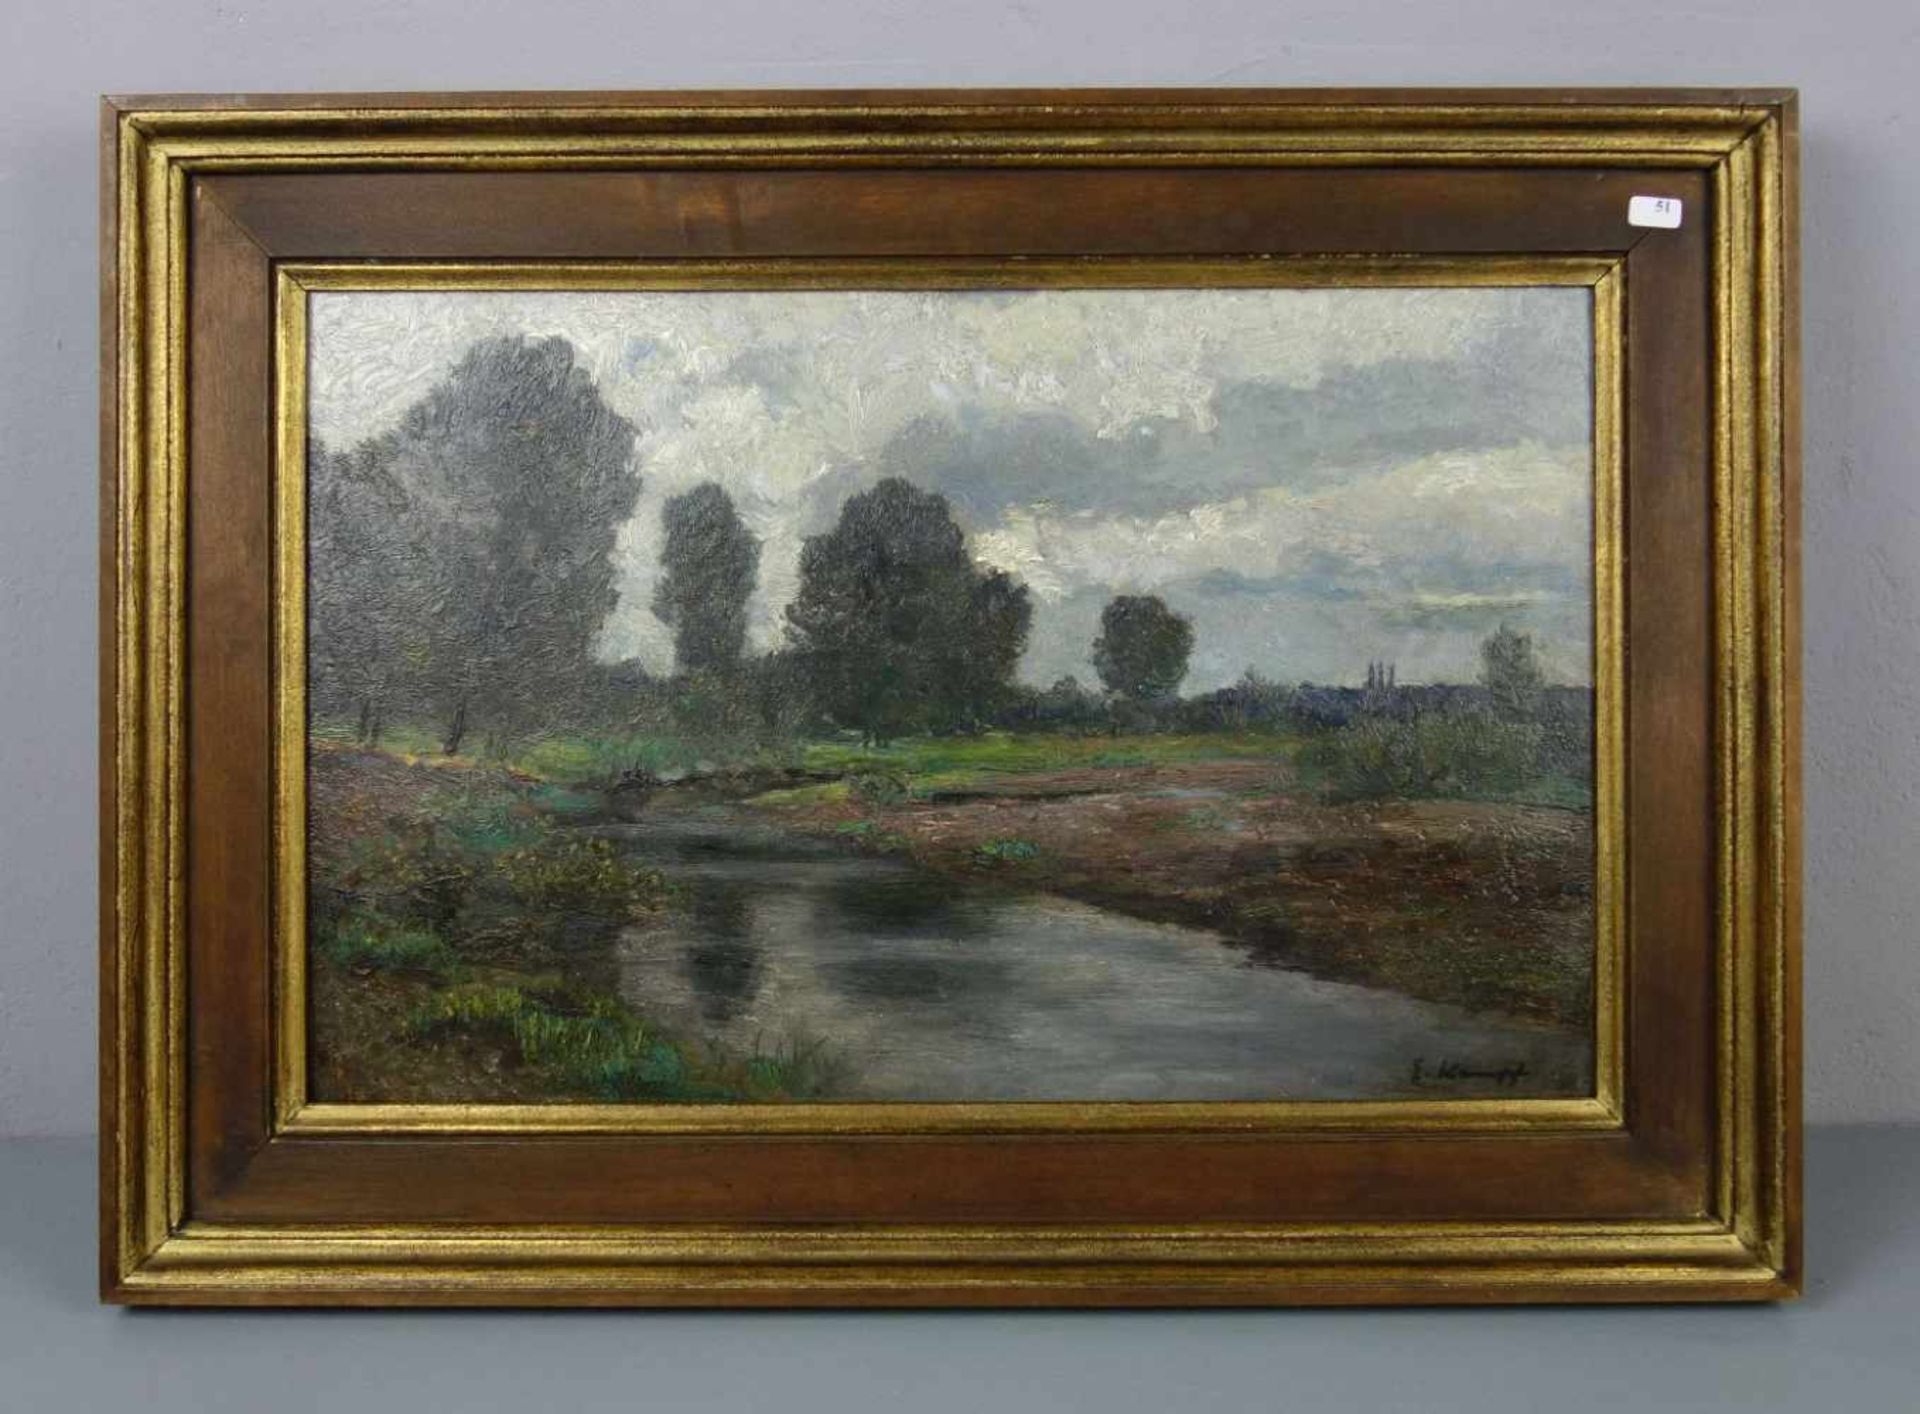 KAMPF, EUGEN (Aachen 1861-1933 Düsseldorf), Gemälde / painting: "Landschaft mit Flusslauf" / "